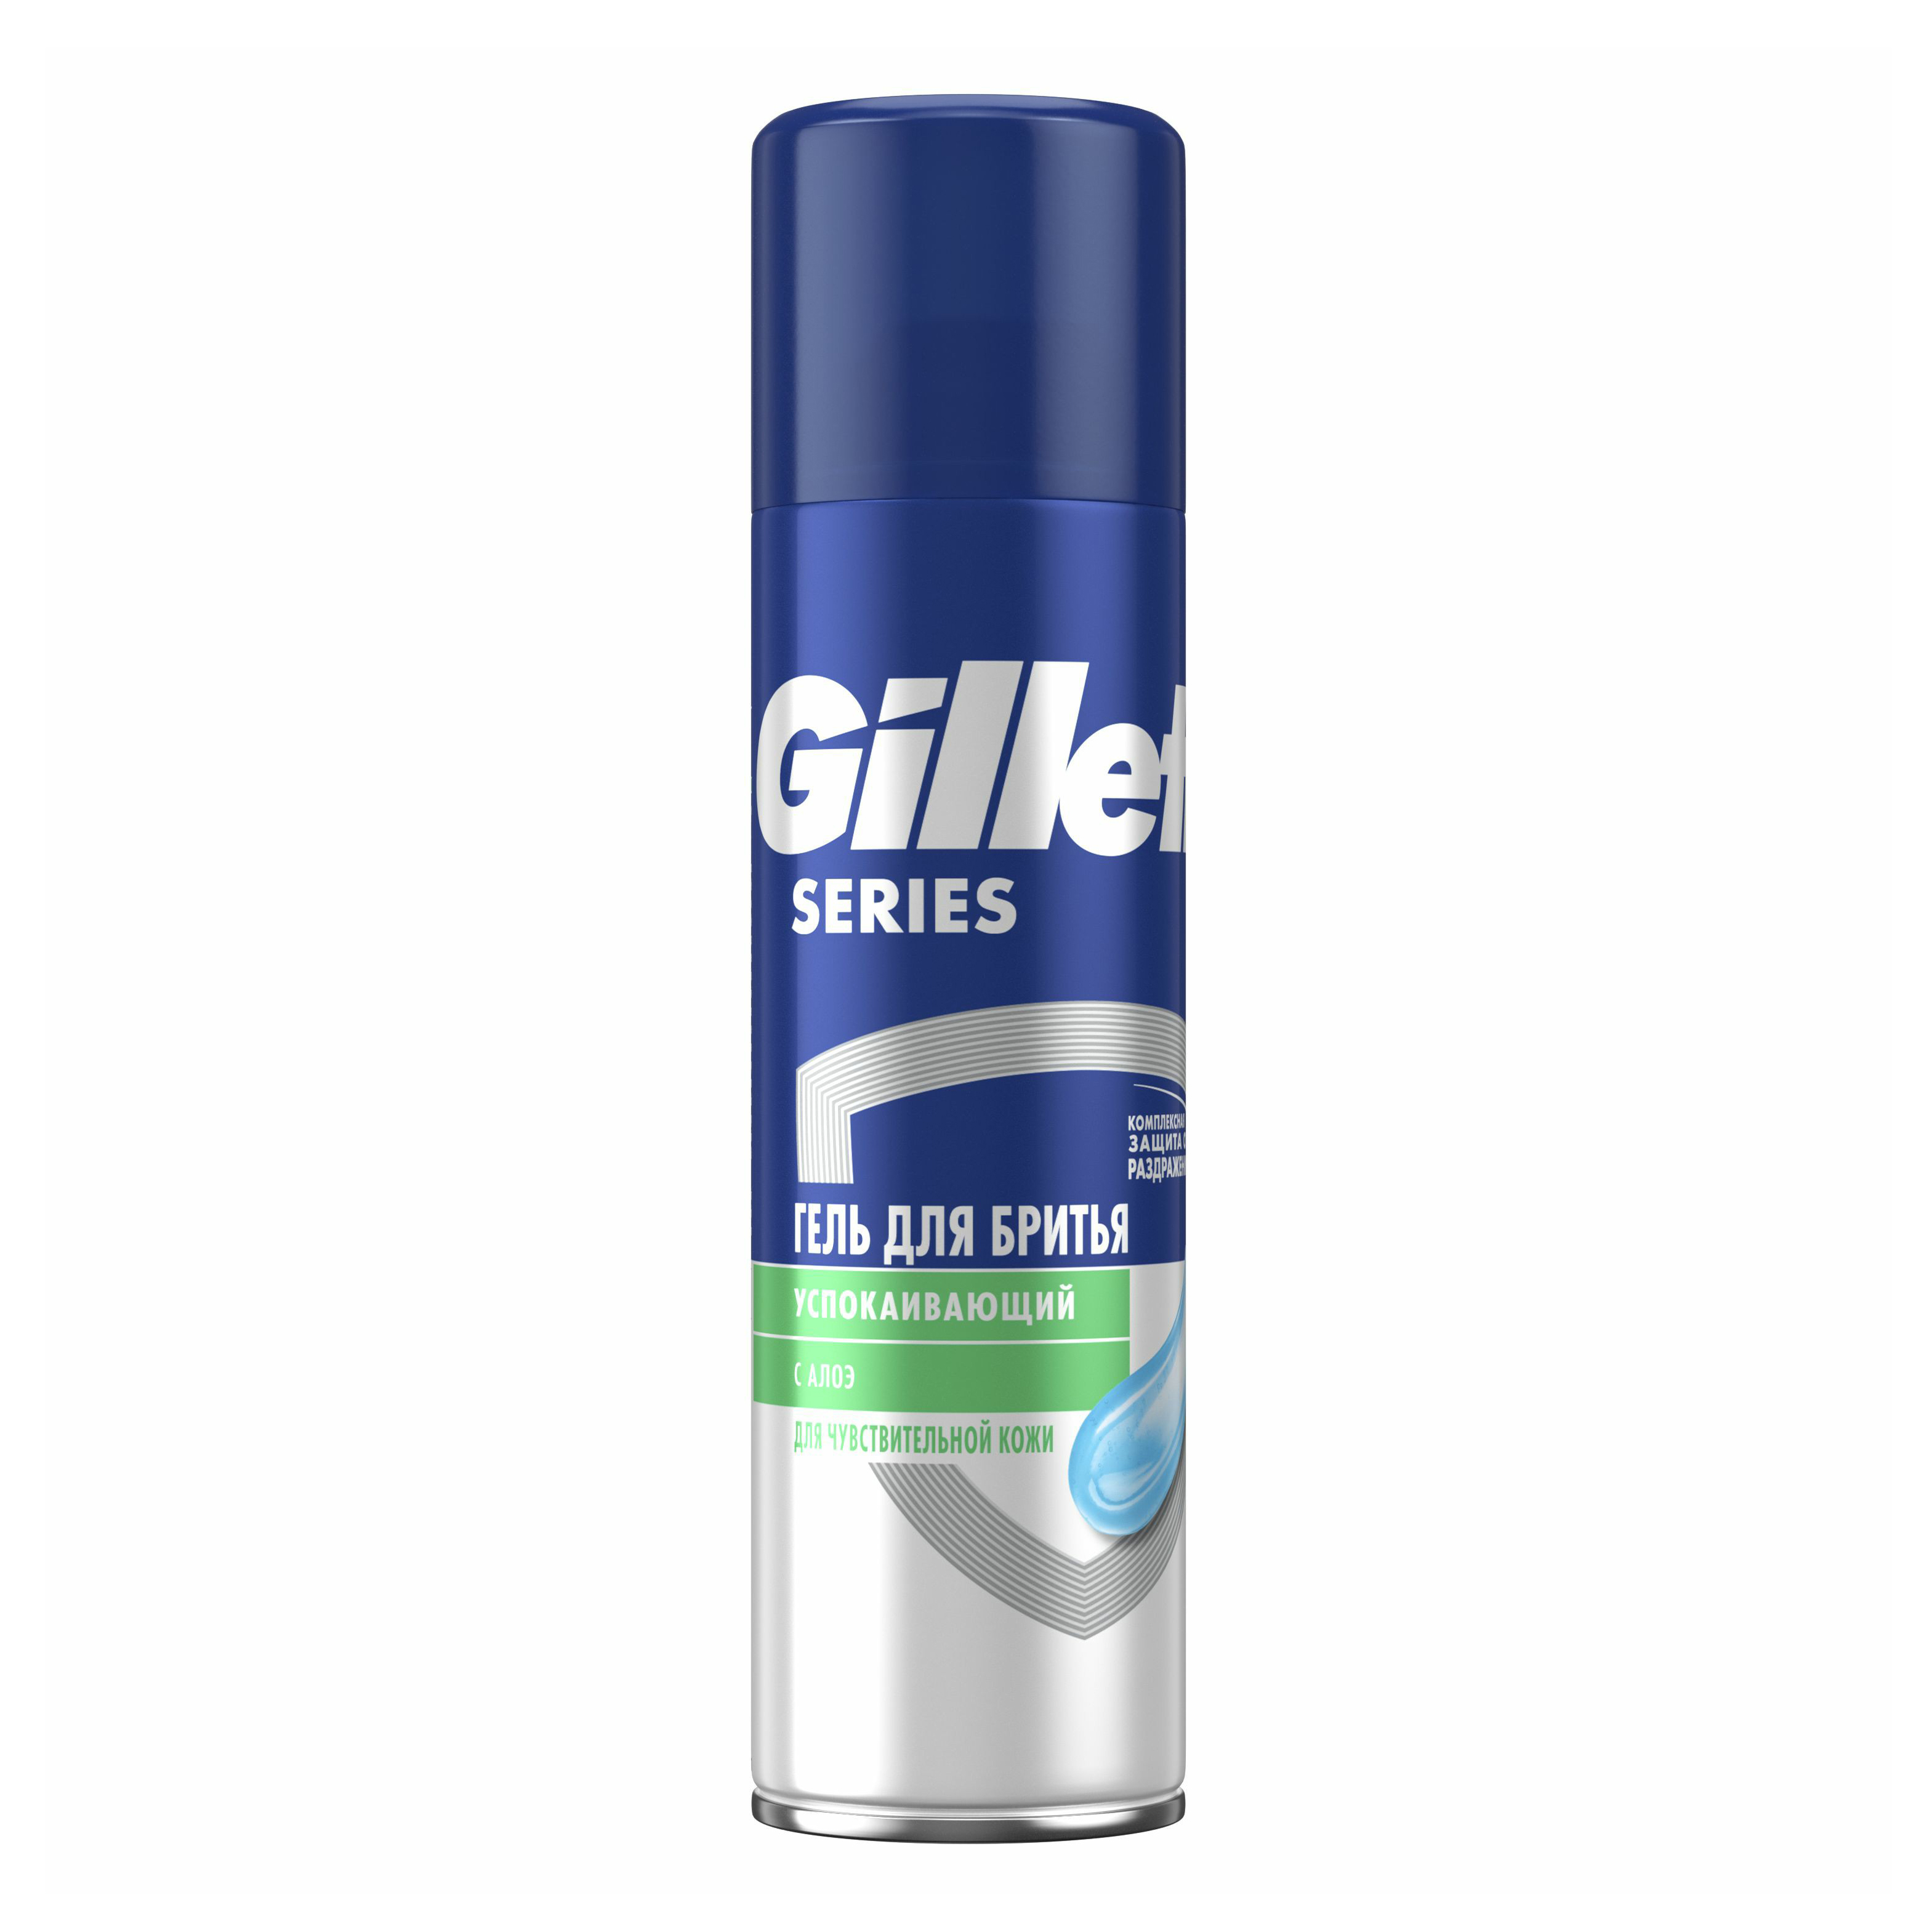 Гель для бритья Gillette Series Для чувствительной кожи 200 мл гель для бритья gillette fusion5 ultra moisturizing 200 мл х 2 шт